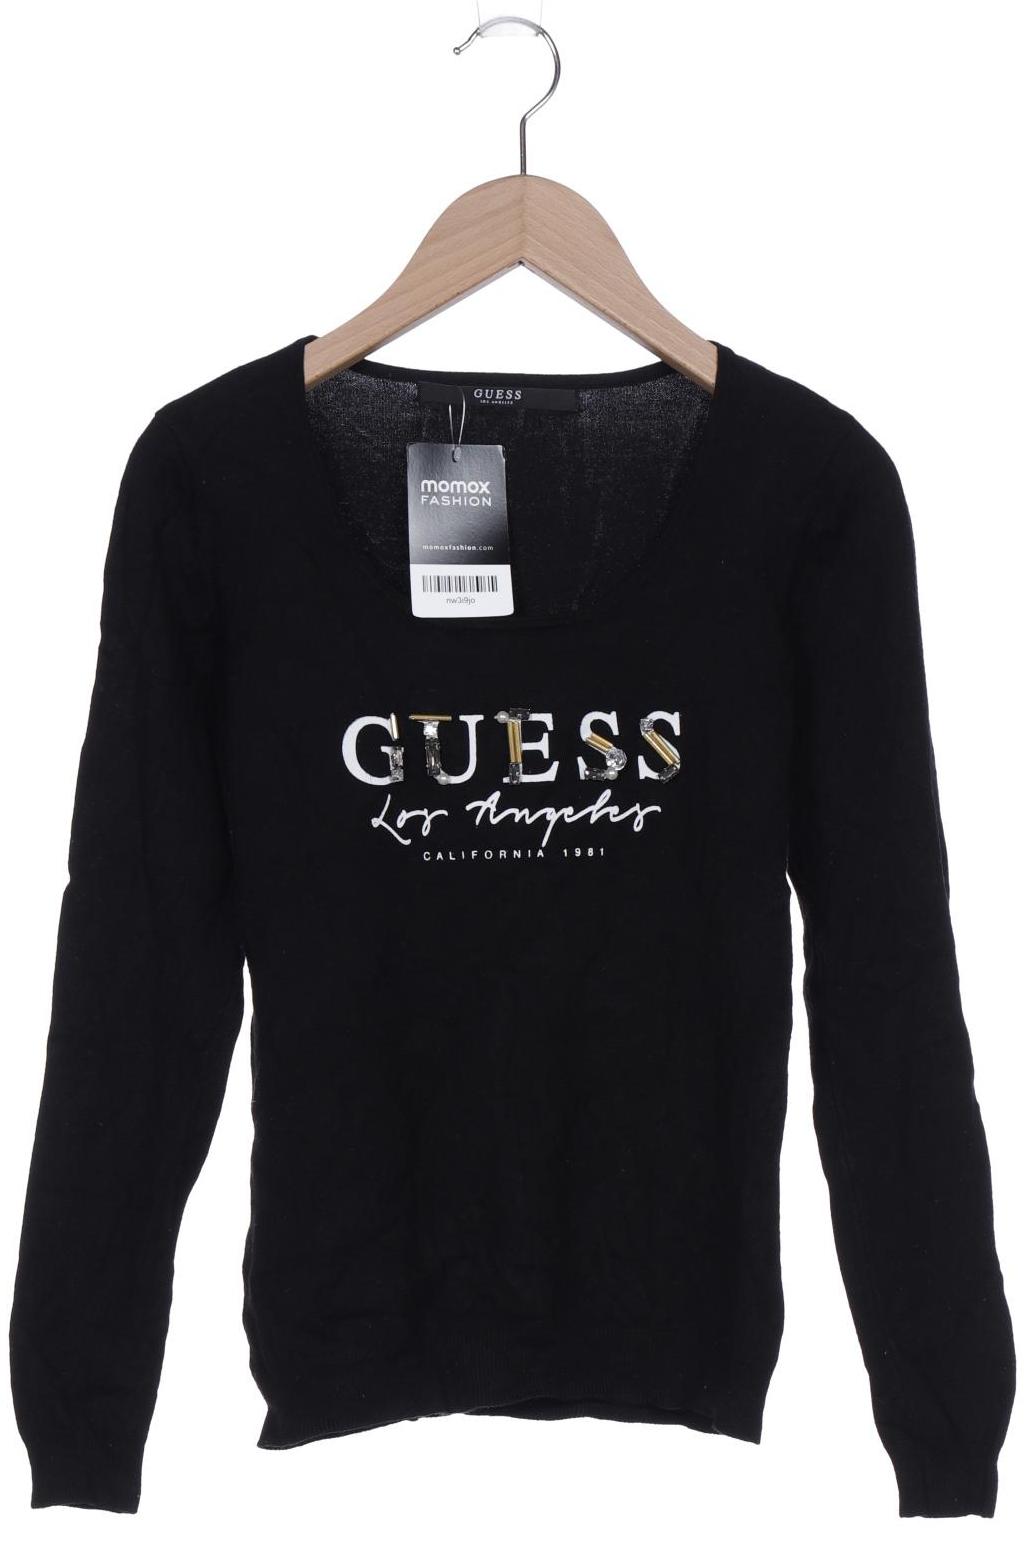 Guess Damen Langarmshirt, schwarz, Gr. 34 von Guess